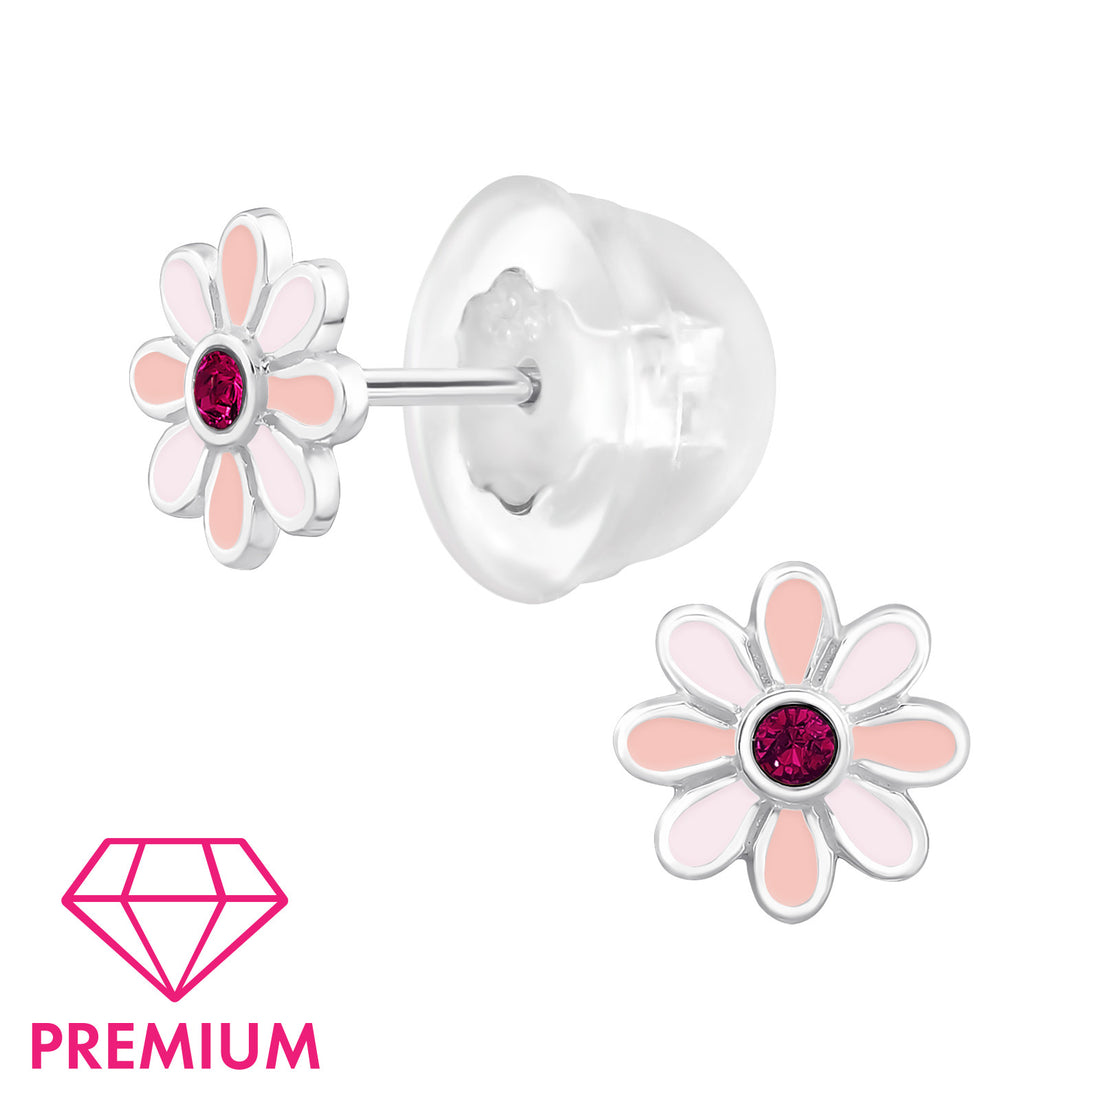 Zilveren kinderoorbellen Premium: Roze bloemetje